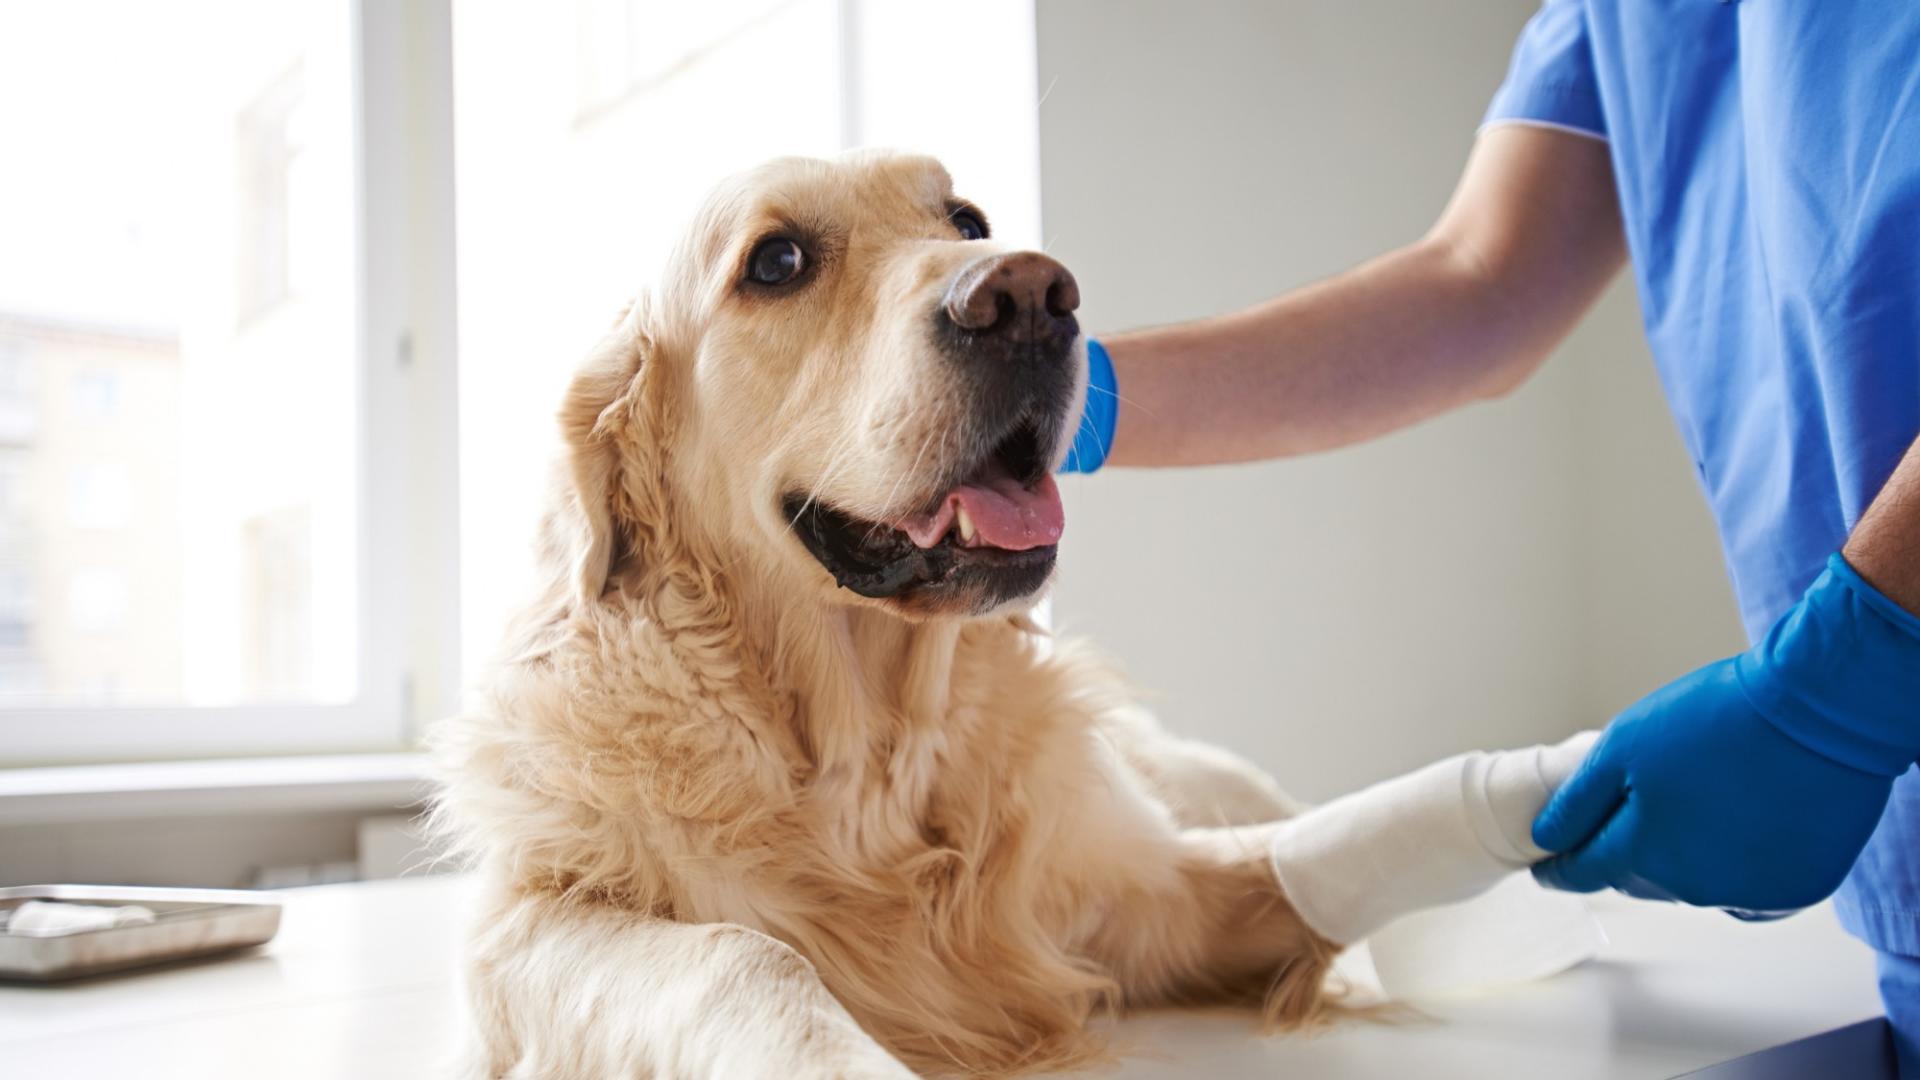 Auf dem Bild ist ein Hund beim Tierarzt zu sehen, der einen Verband um eine verletzte Pfote hat.